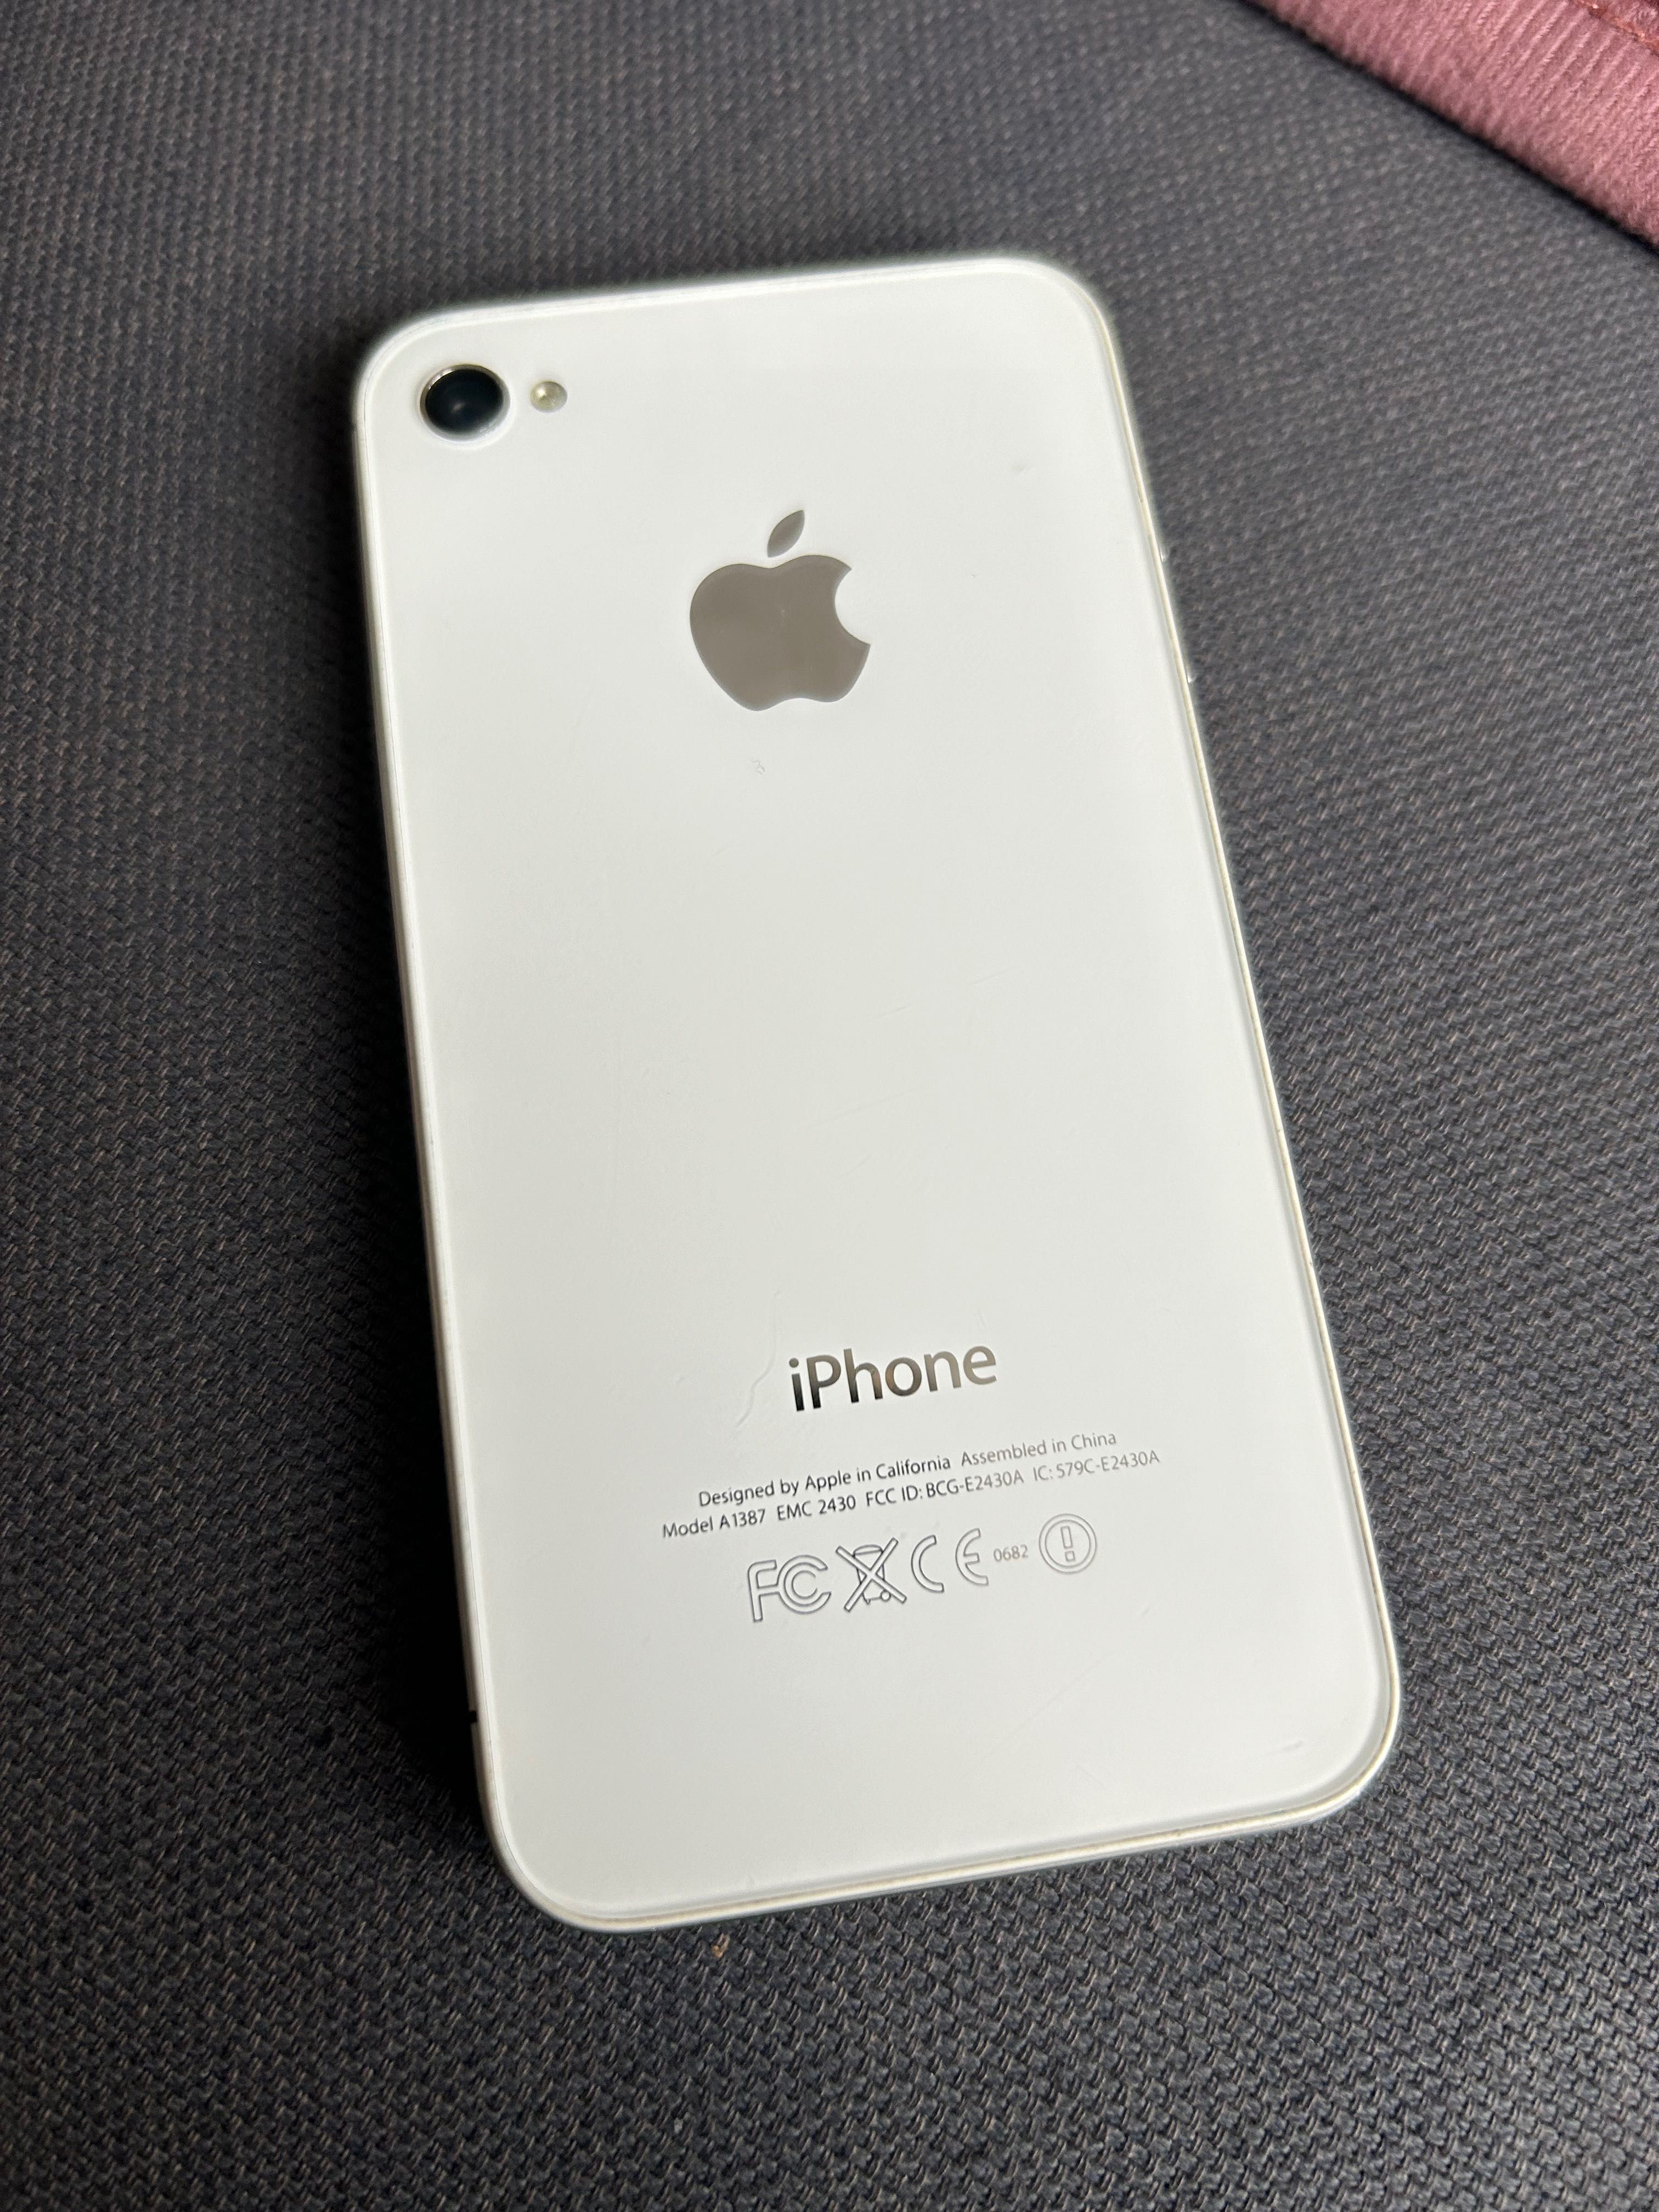 iPhone 4S 8GB używany